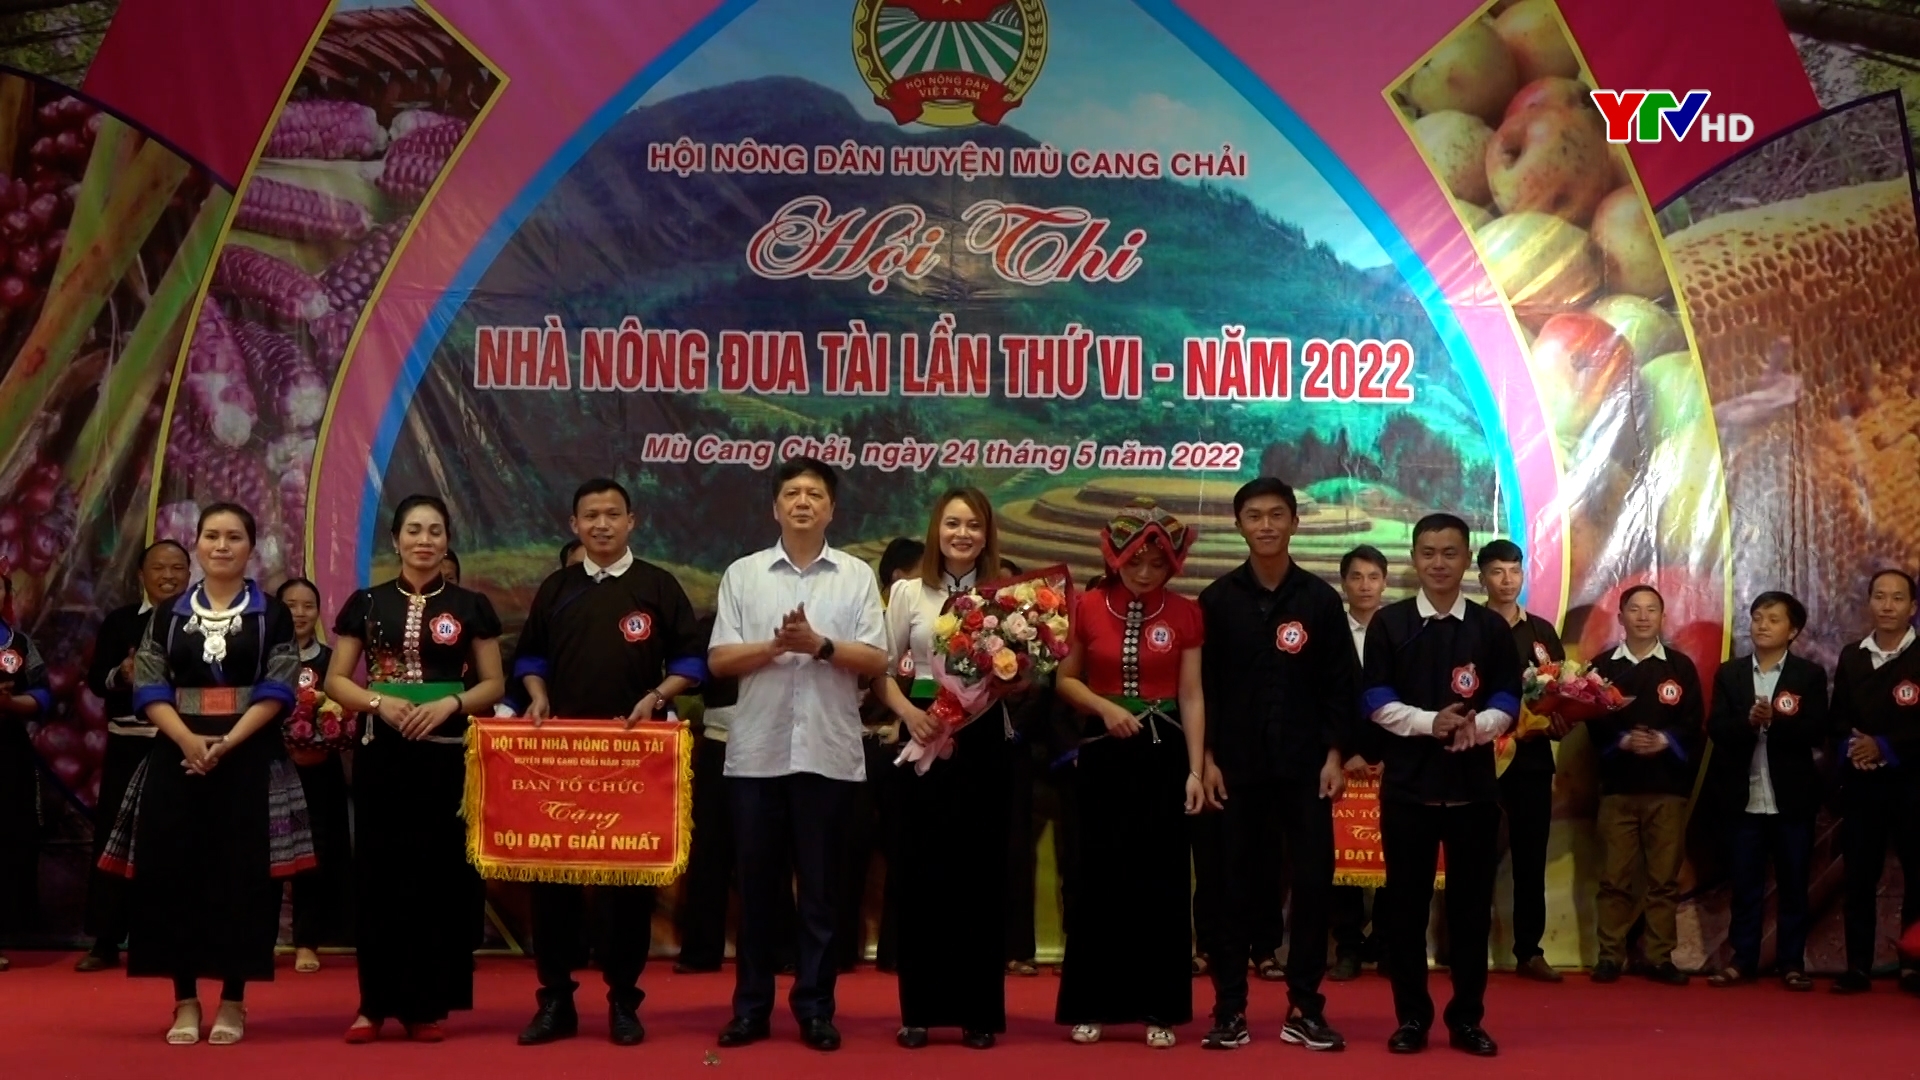 Hội thi nhà nông đua tài huyện Mù Cang Chải lần thứ VI năm 2022